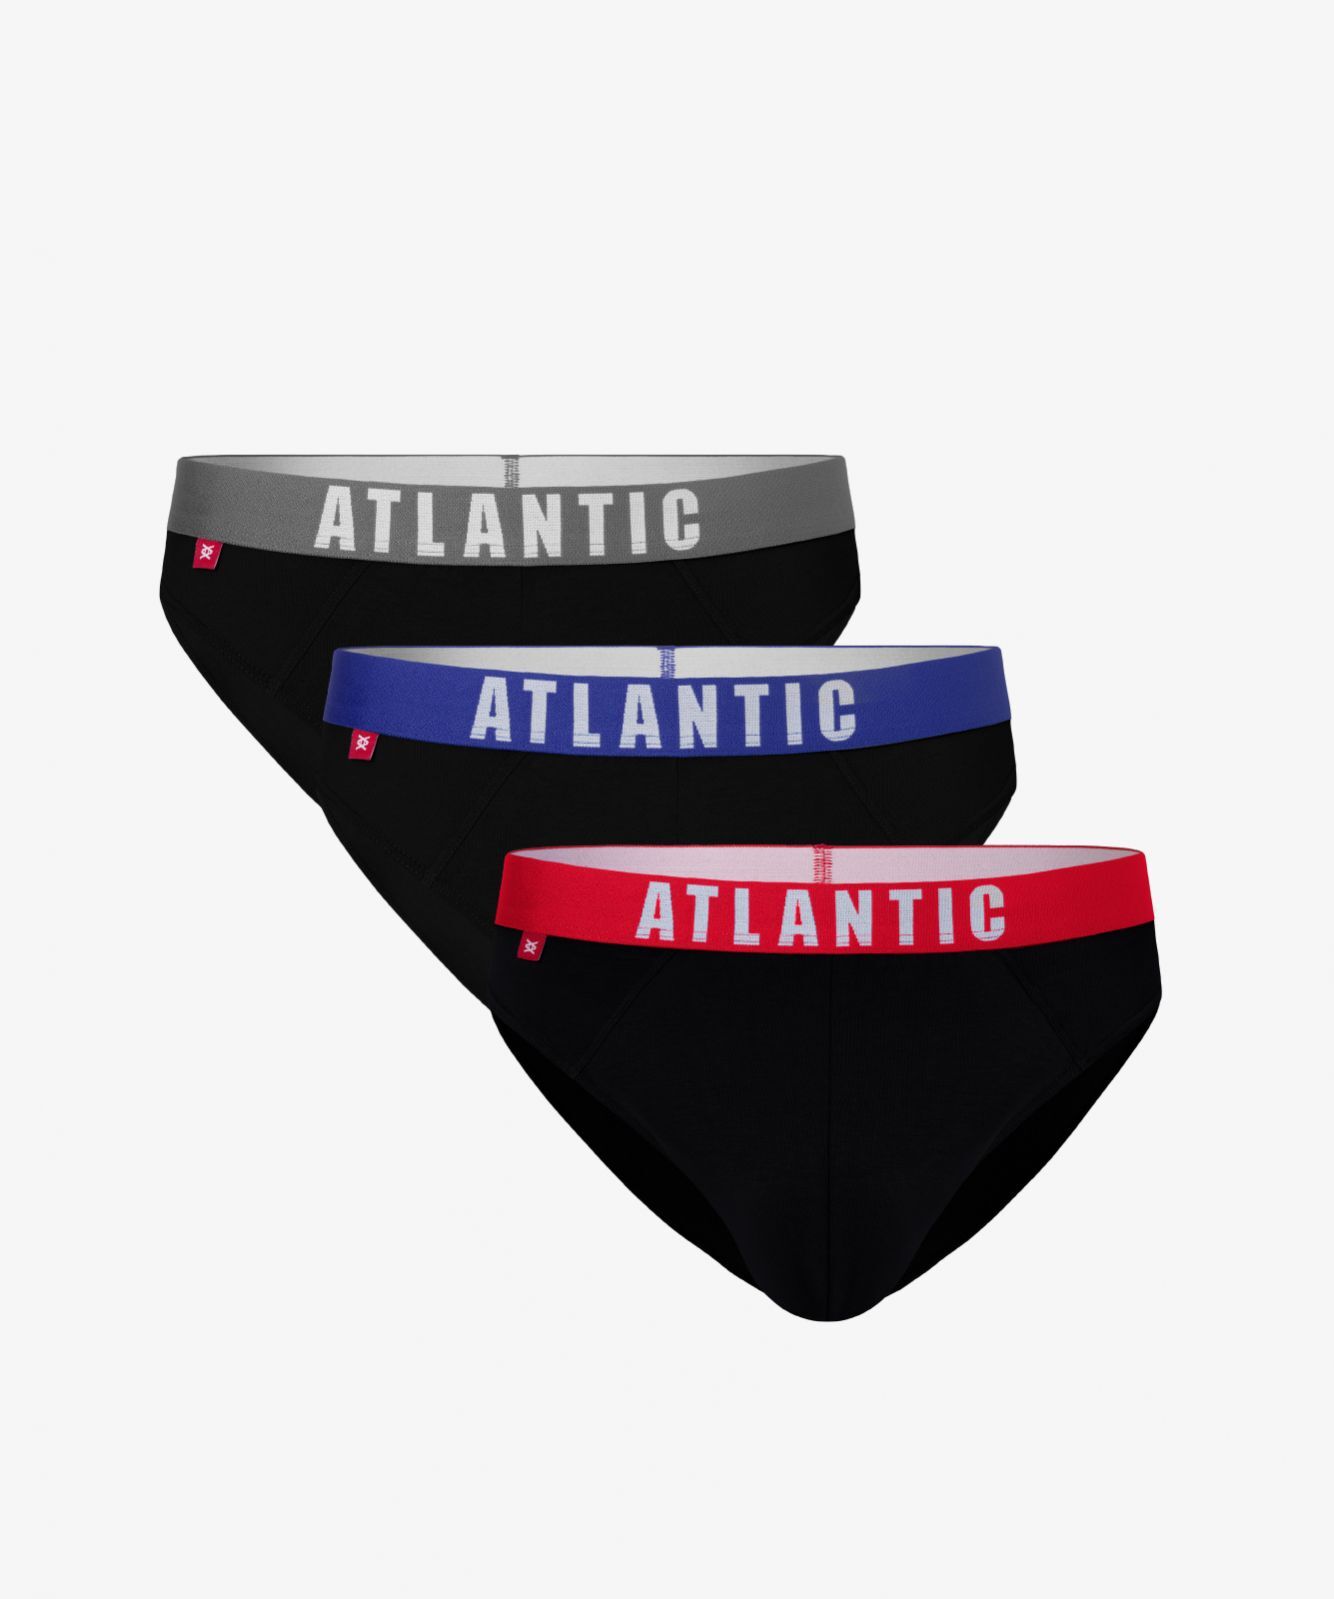 Мужские трусы слипы спорт Atlantic, набор 3 шт., хлопок, графит + серый меланж + черные, 3MP-094